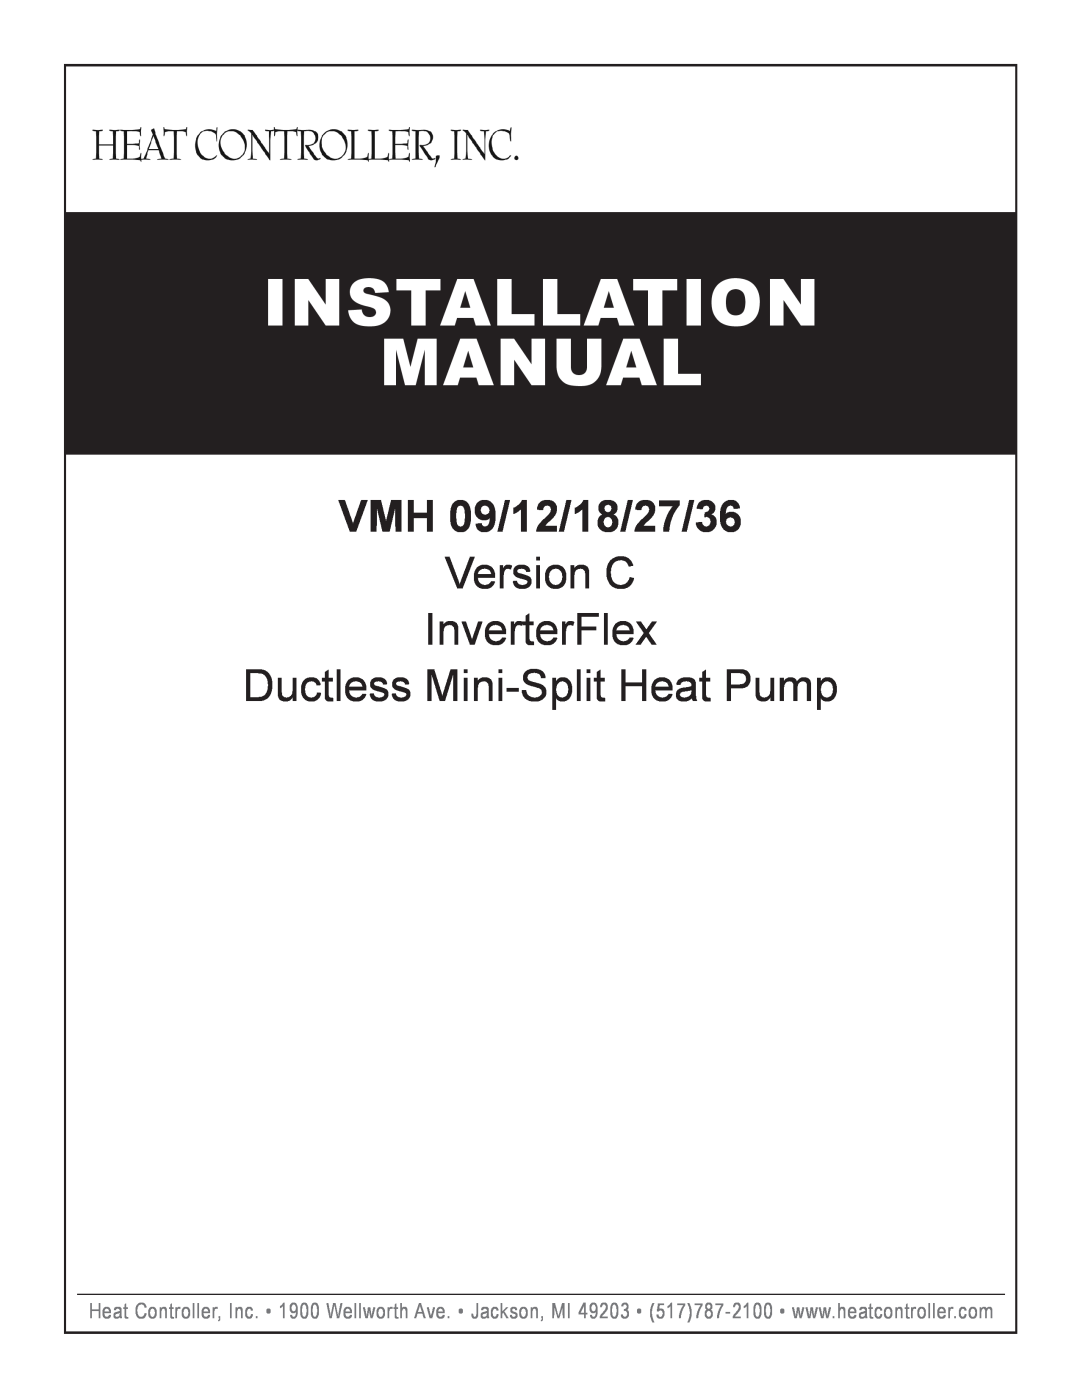 Heat Controller VMH 18, VMH 27, VMH 36 installation manual Installation Manual, VMH 09/12/18/27/36, Version C InverterFlex 